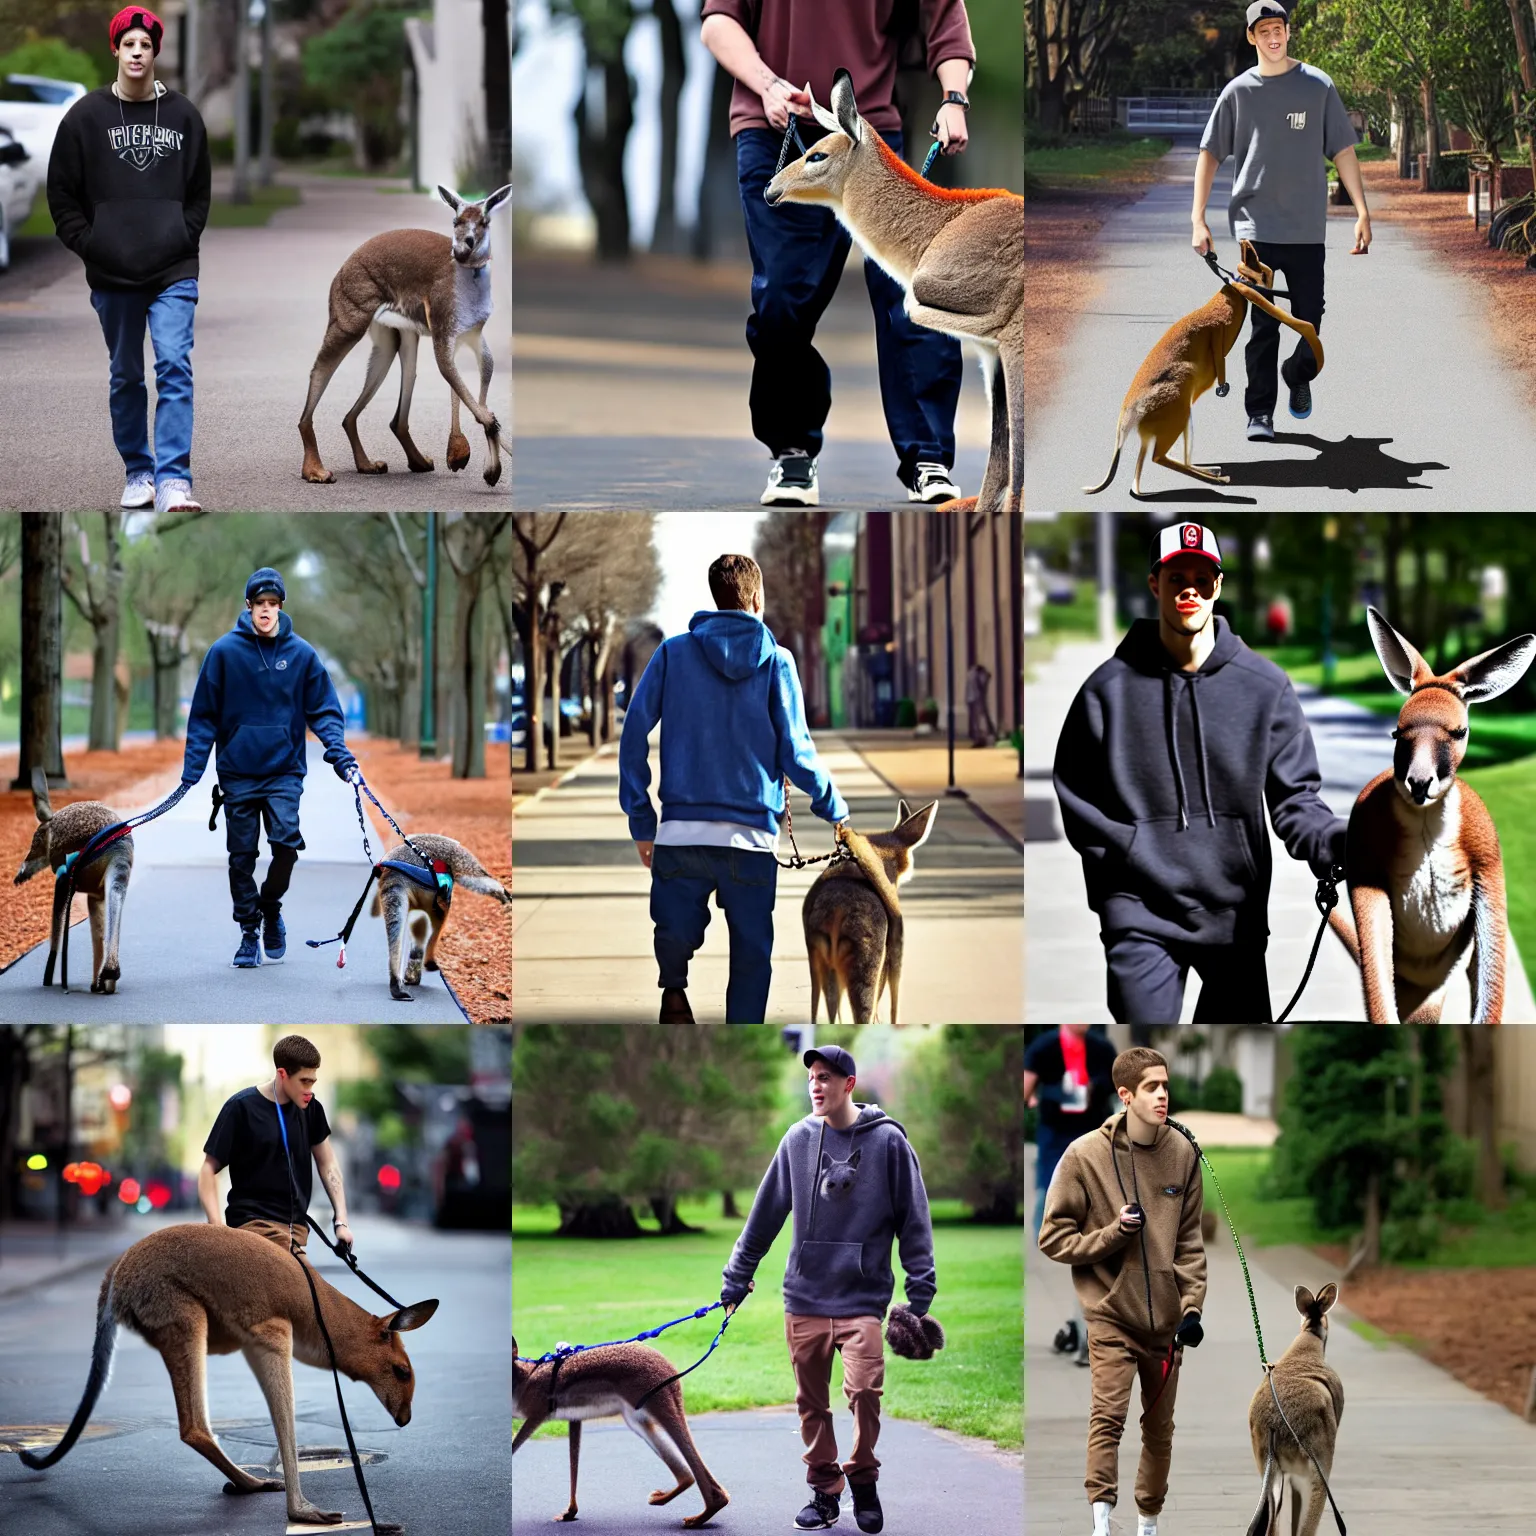 Prompt: Pete Davidson walking a kangaroo, 4k, photorealistic